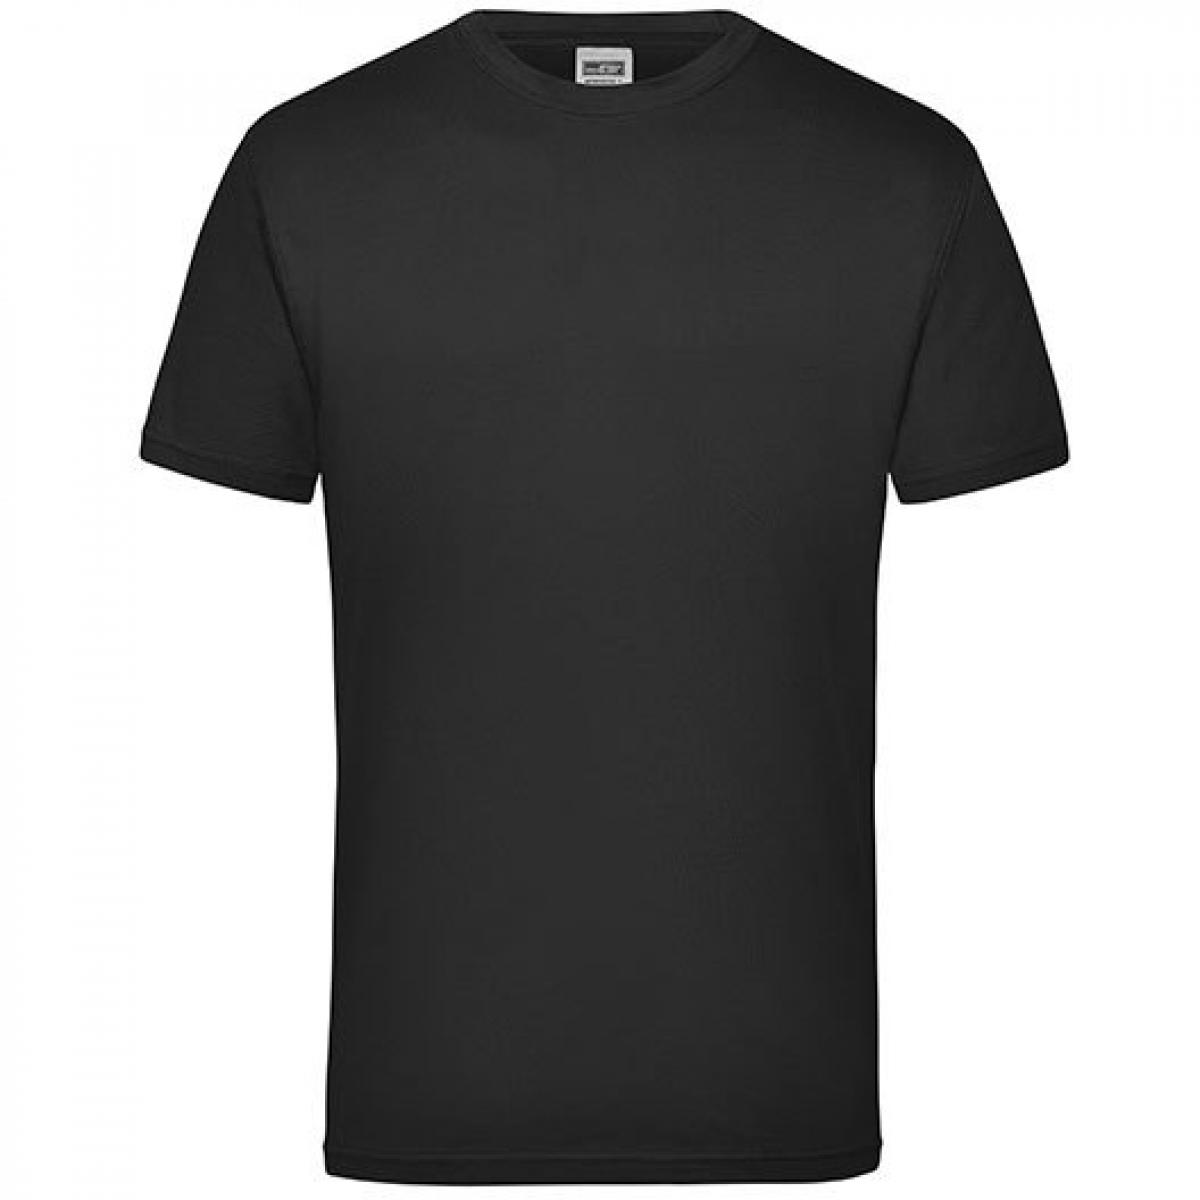 Hersteller: James+Nicholson Herstellernummer: JN 800 Artikelbezeichnung: Workwear Herren T-Shirt - waschbar bis 60 °C Farbe: Black